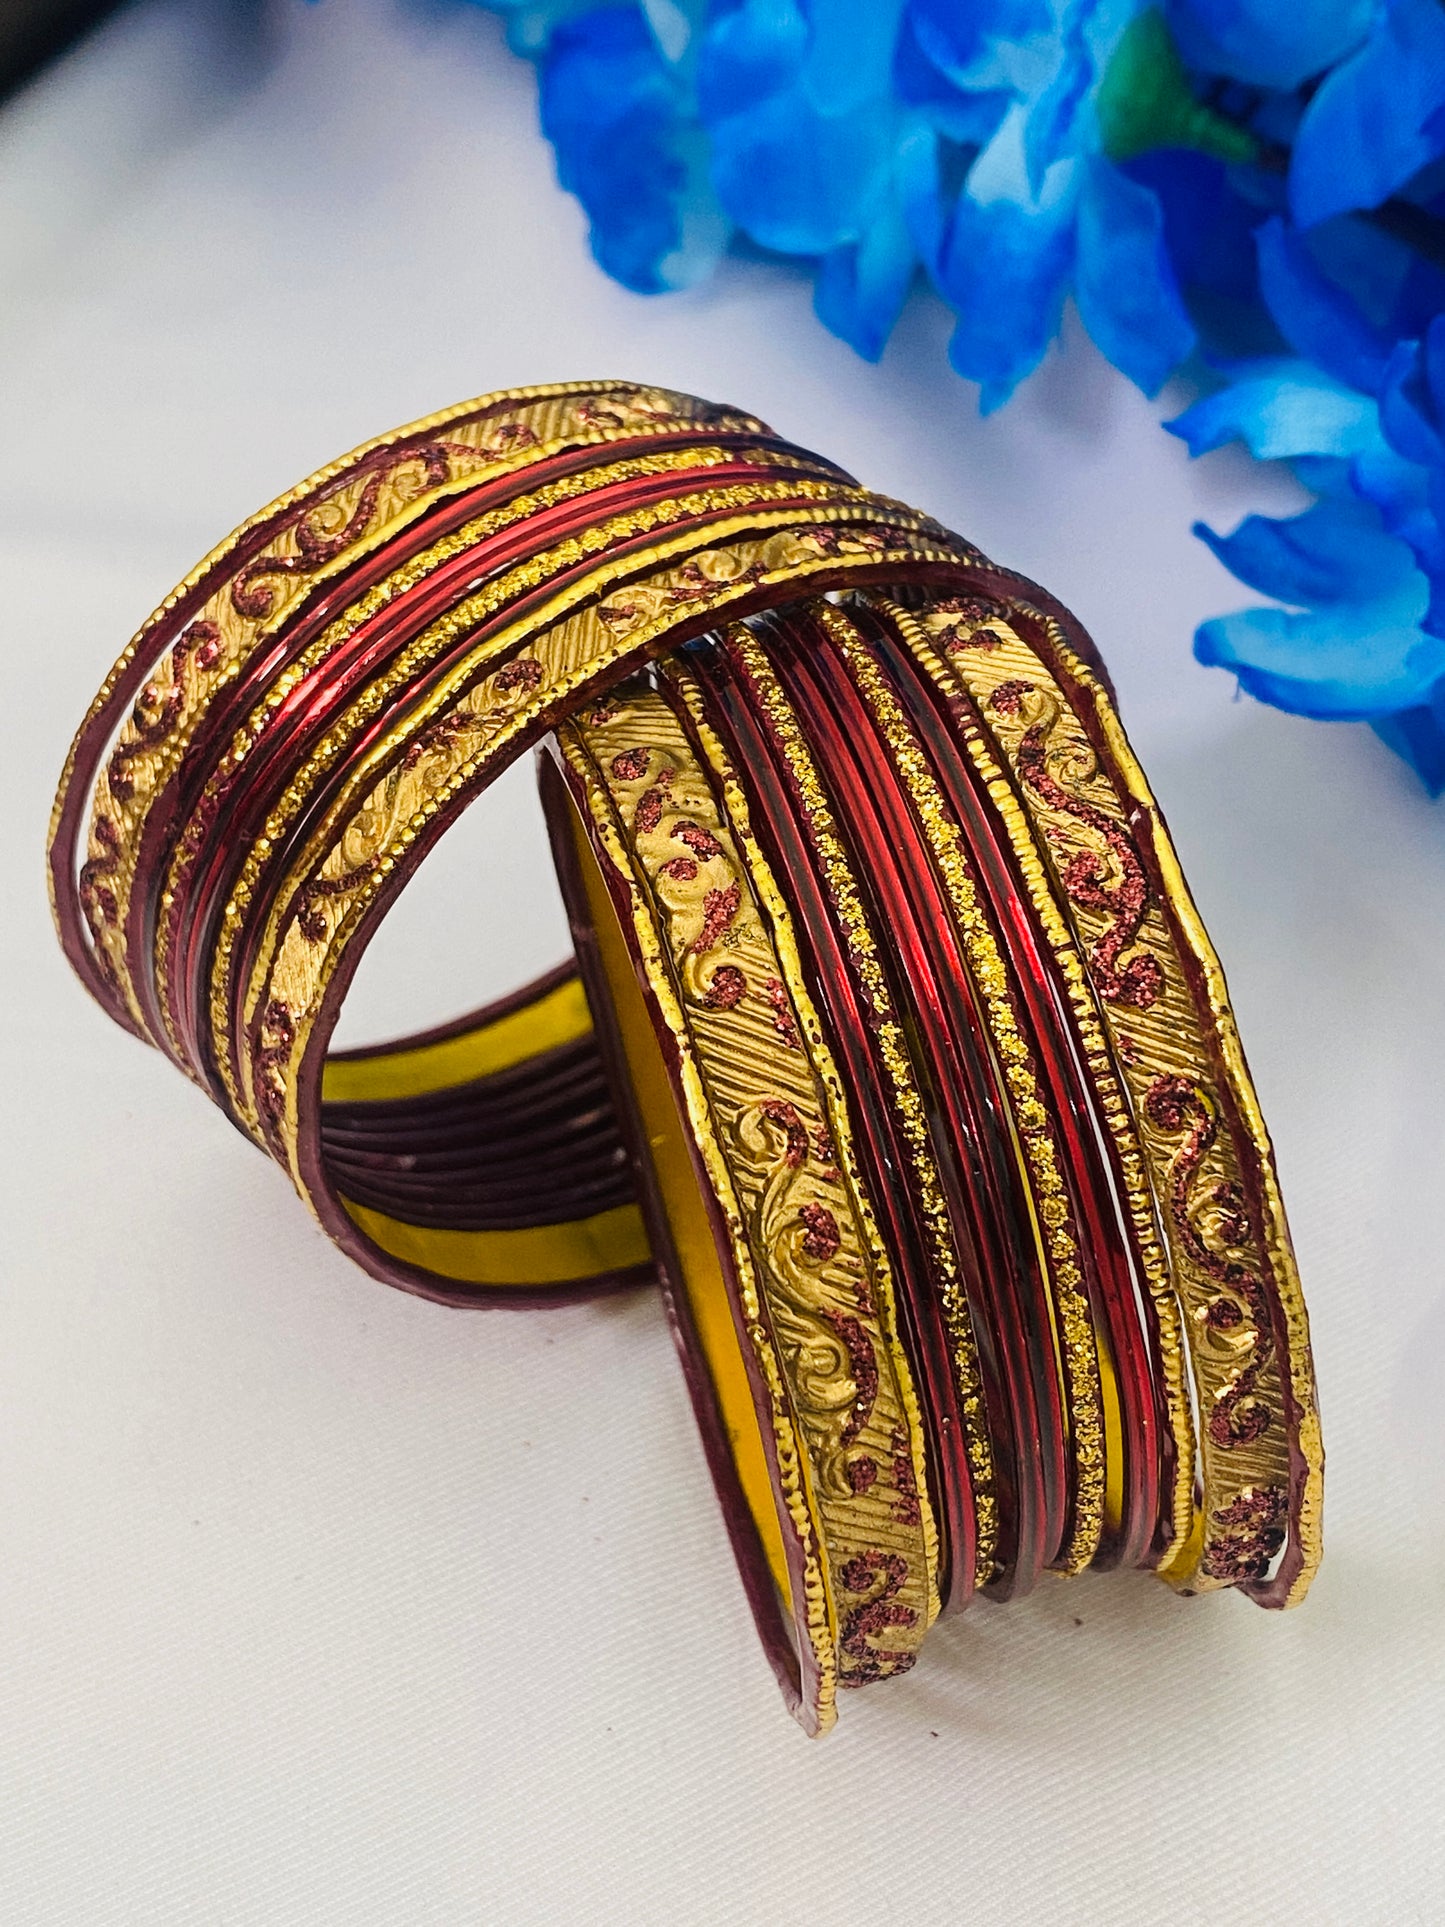  Traditional Festive Wear Metal Bangles For Women In Kingman